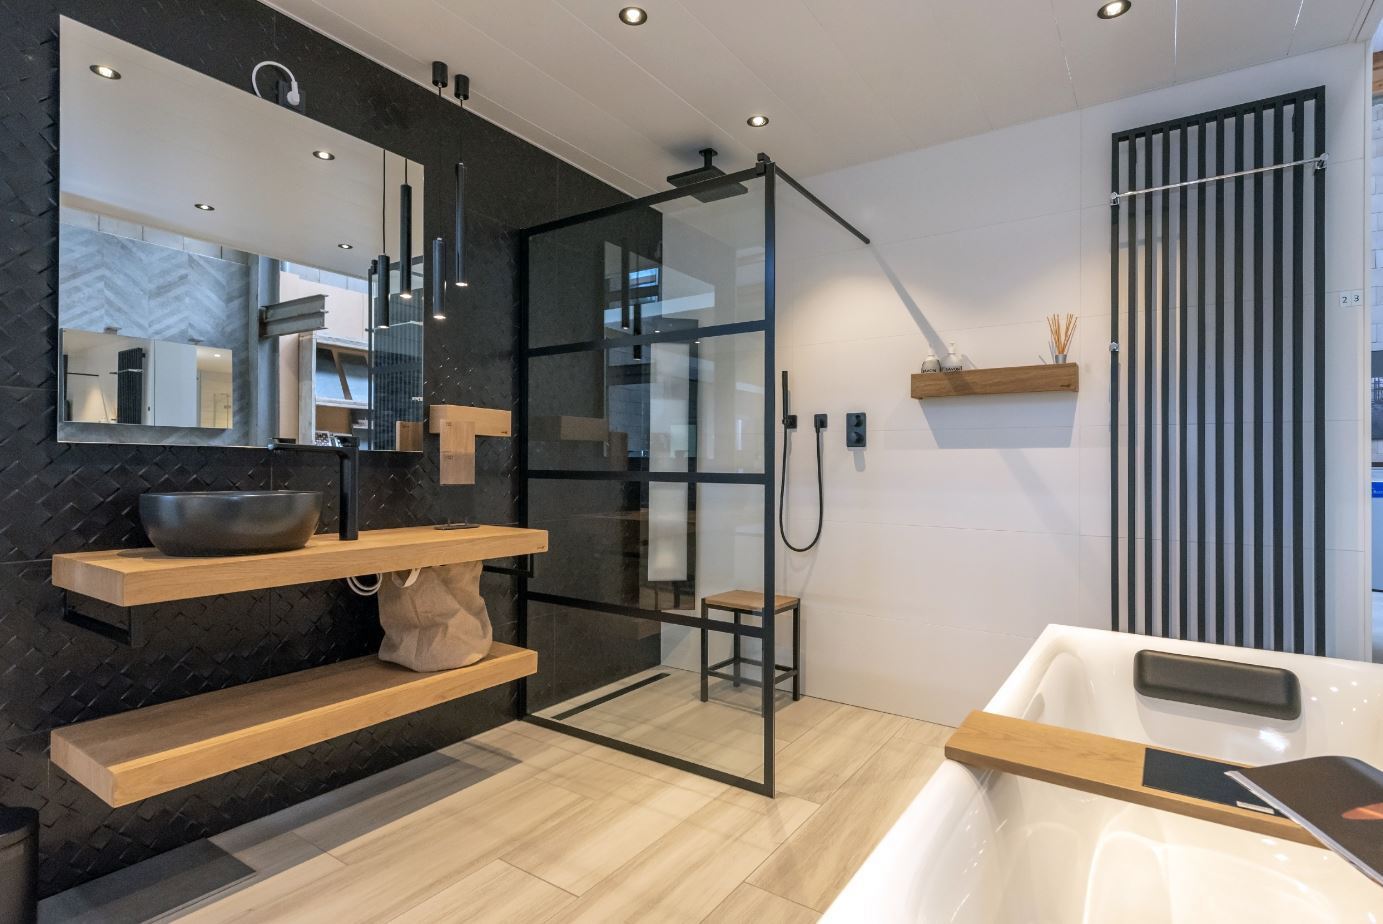 Pure ontspanning, gewoon bij je thuis. Bij Sanidrôme vind je verschillende badkamer opstellingen in verschillende stijlen. Een complete badkamer van A tot Z #sanidrome #badkamer #completebadkamer #badkamerinspiratie #badkameridee #badkamerkopen